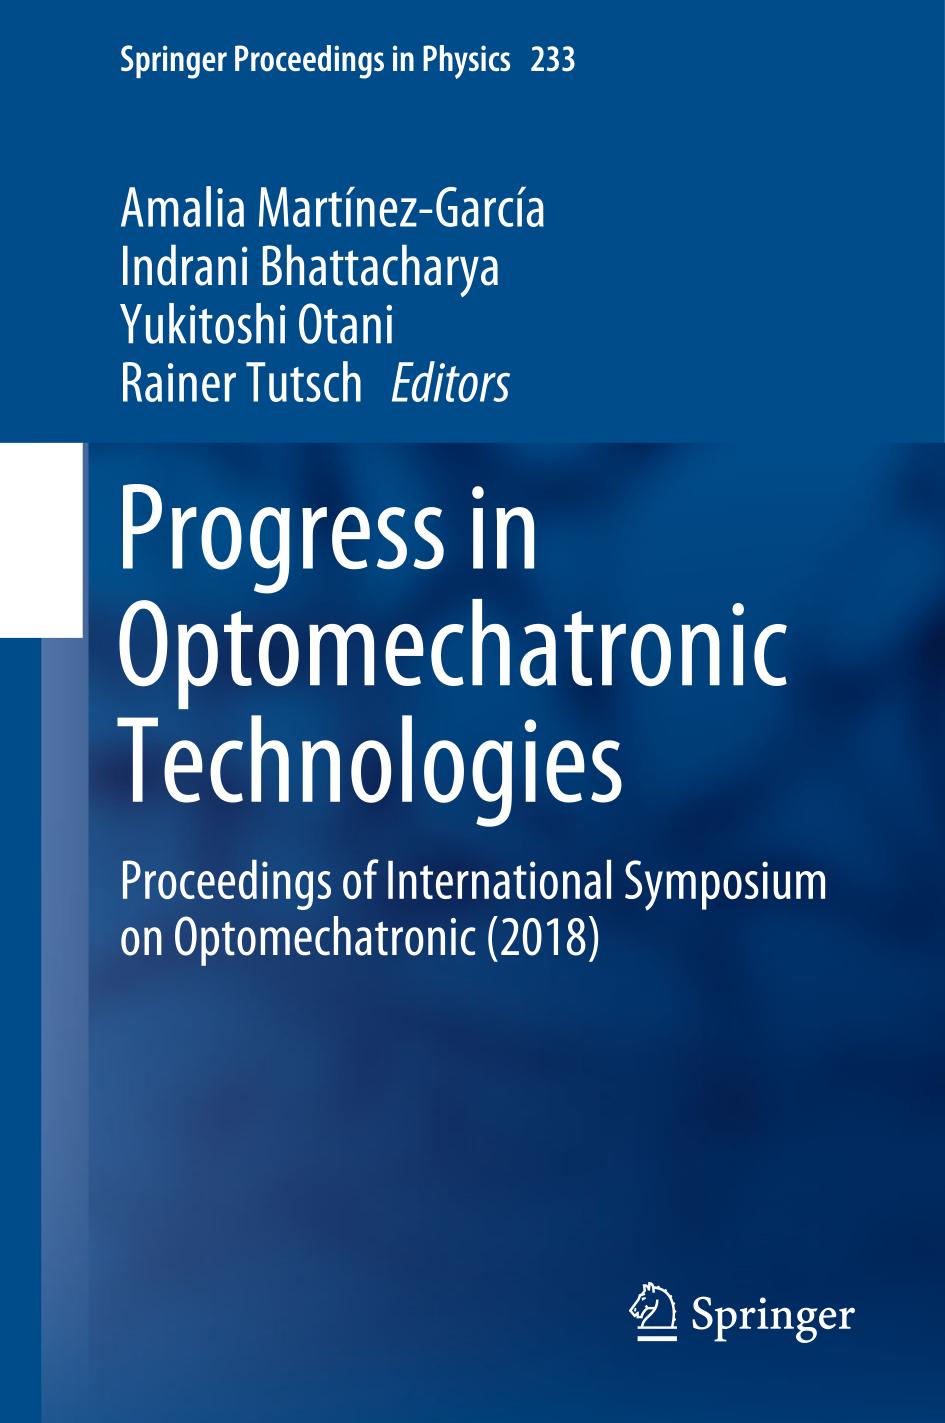 Progress in Optomechatronic Technologies : Proceedings of International Symposium on Optomechatronic (2018)